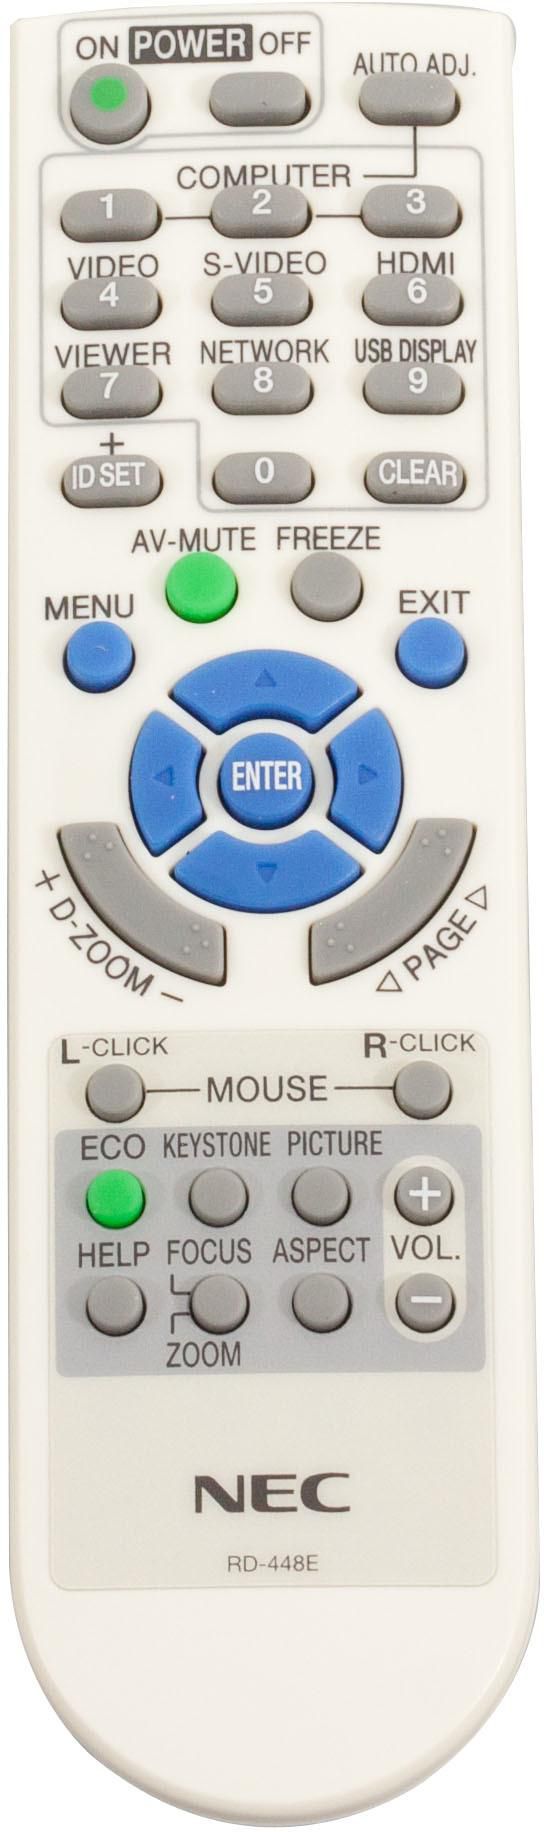 NEC Remote Controller RD-448E - W124534860